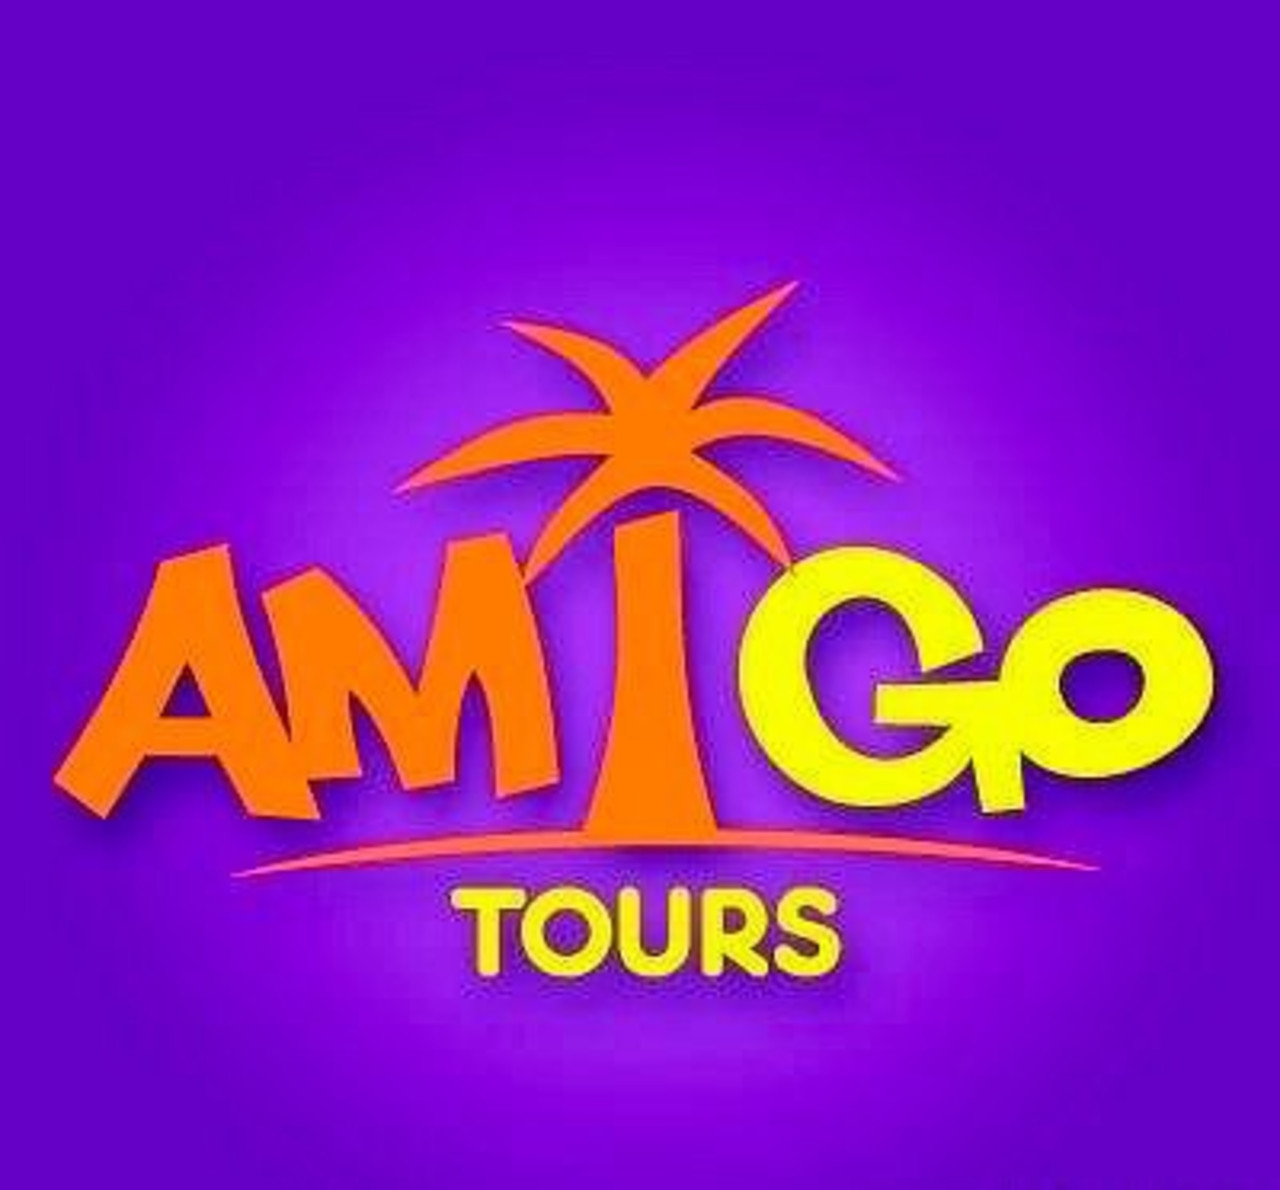 Амигос озеры сеансы. Амиго тур. Амигос тур туроператор. Амиго Турс туроператор. Амиго Турс логотип.